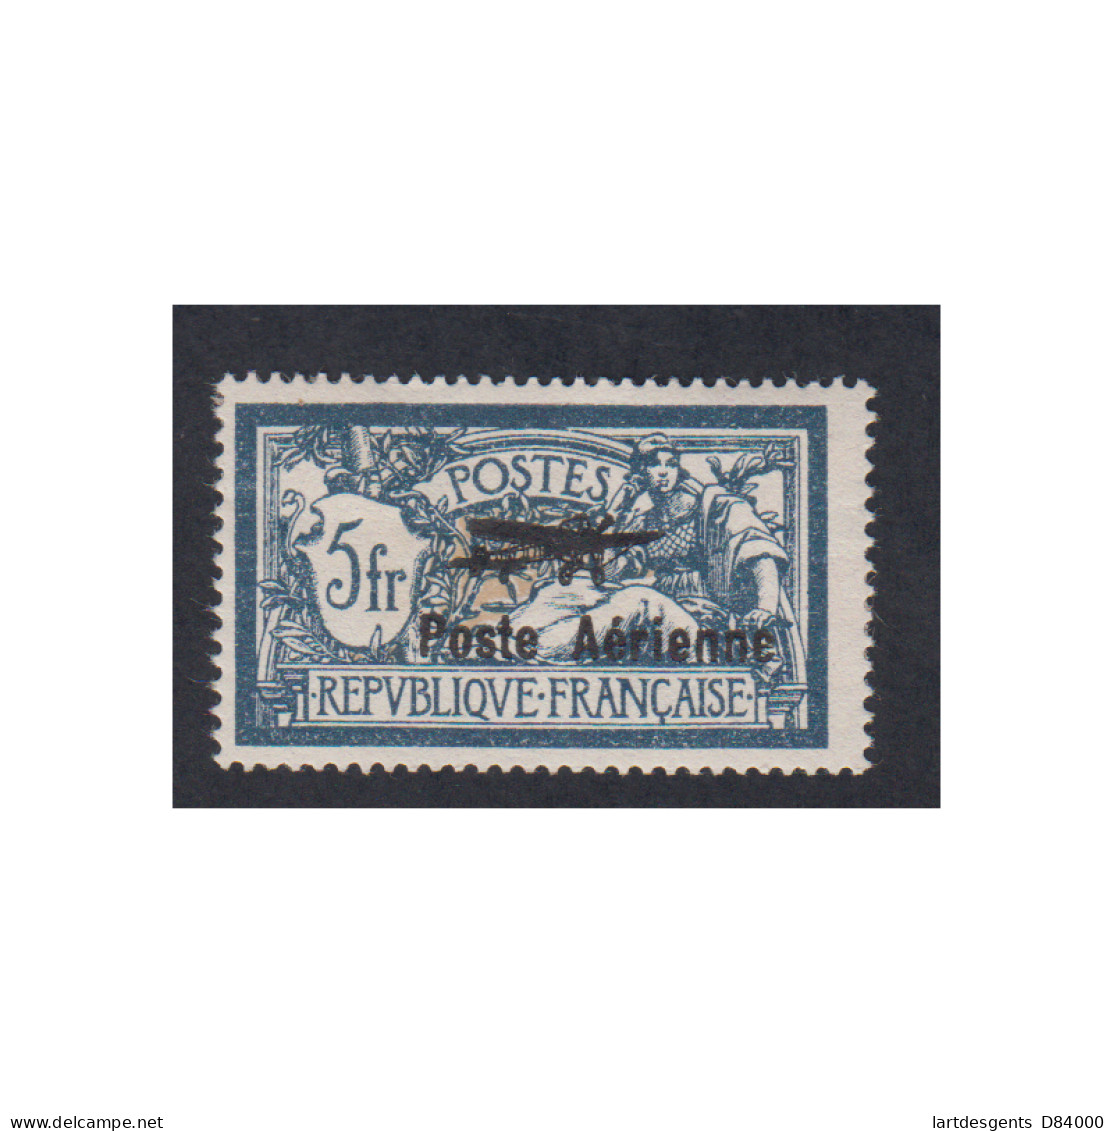 Timbre Poste Aérienne - Année 1927 - N°2 - Neuf* Signé Cote 250 Euros -lartdesgents.fr - 1927-1959 Mint/hinged